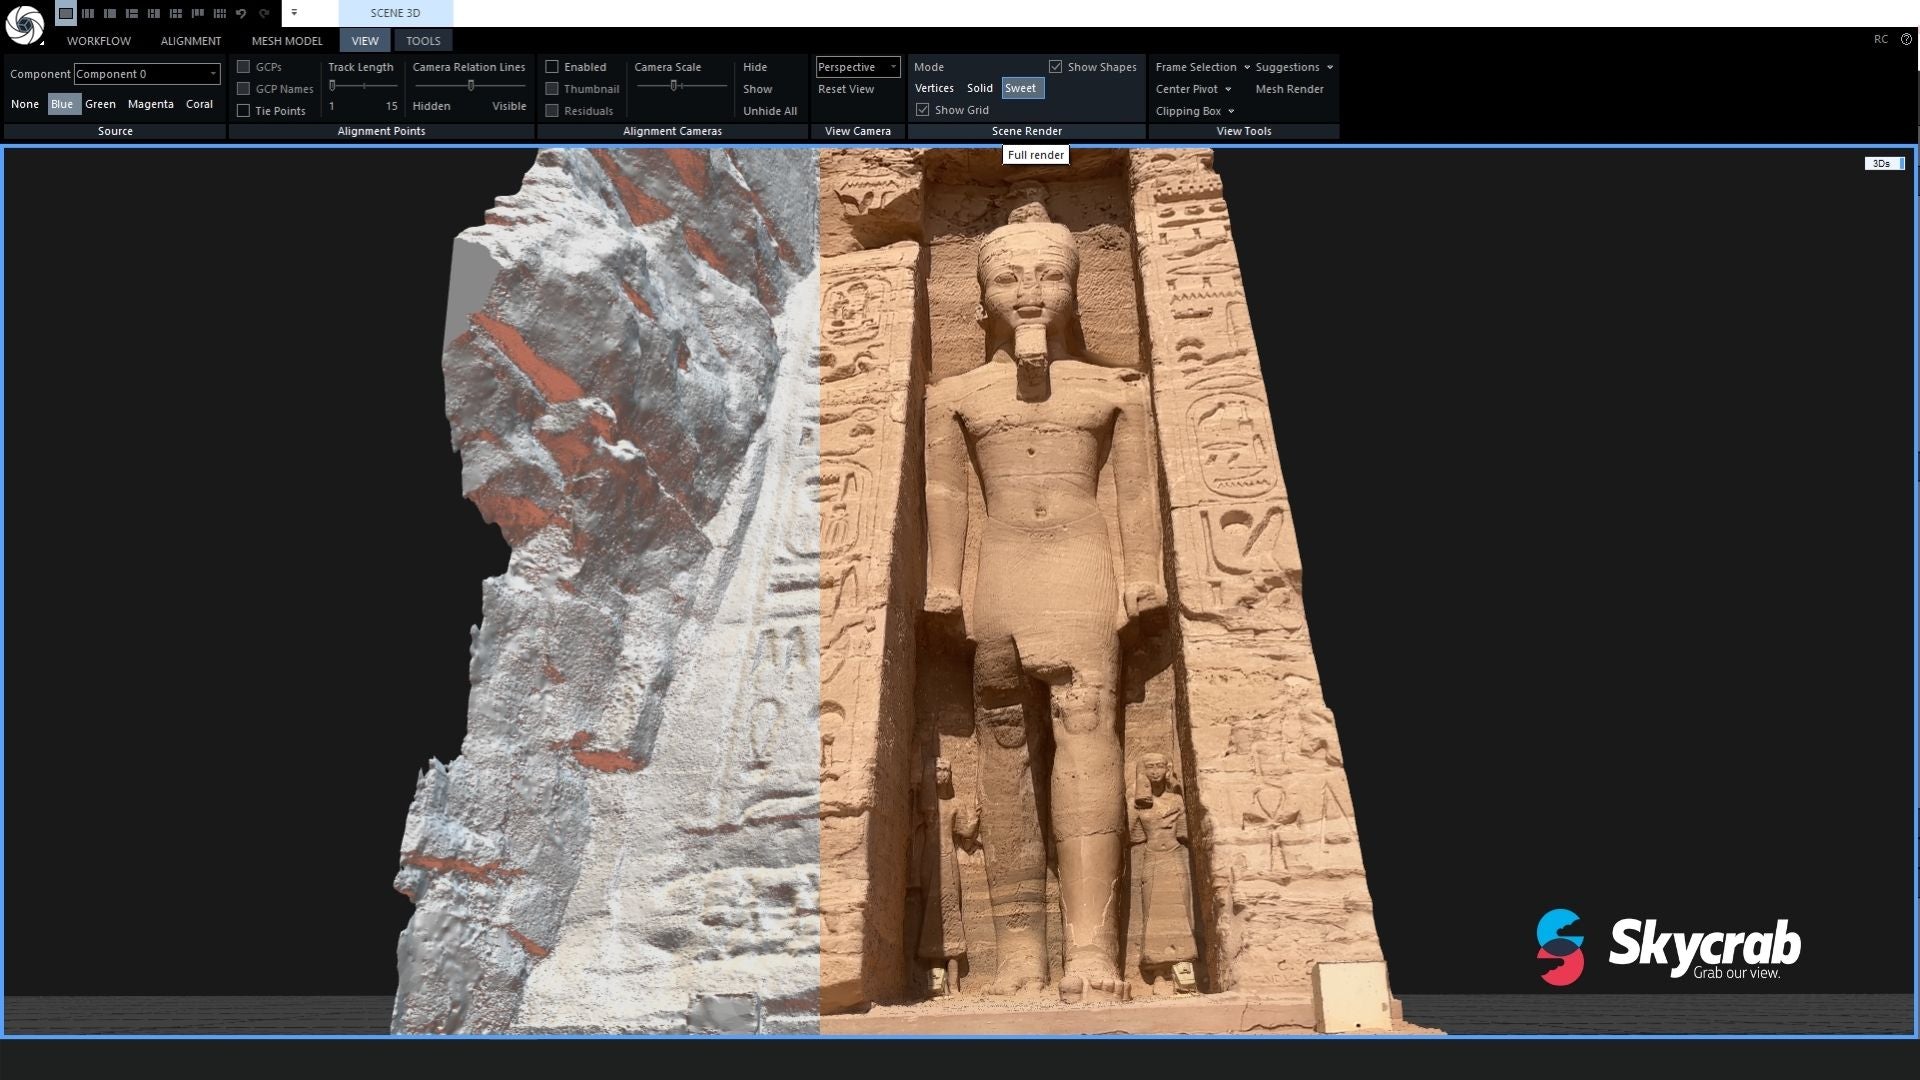 Tempio di Nefertari | Abu Simbel - Rilievo 3D del sito archeologico